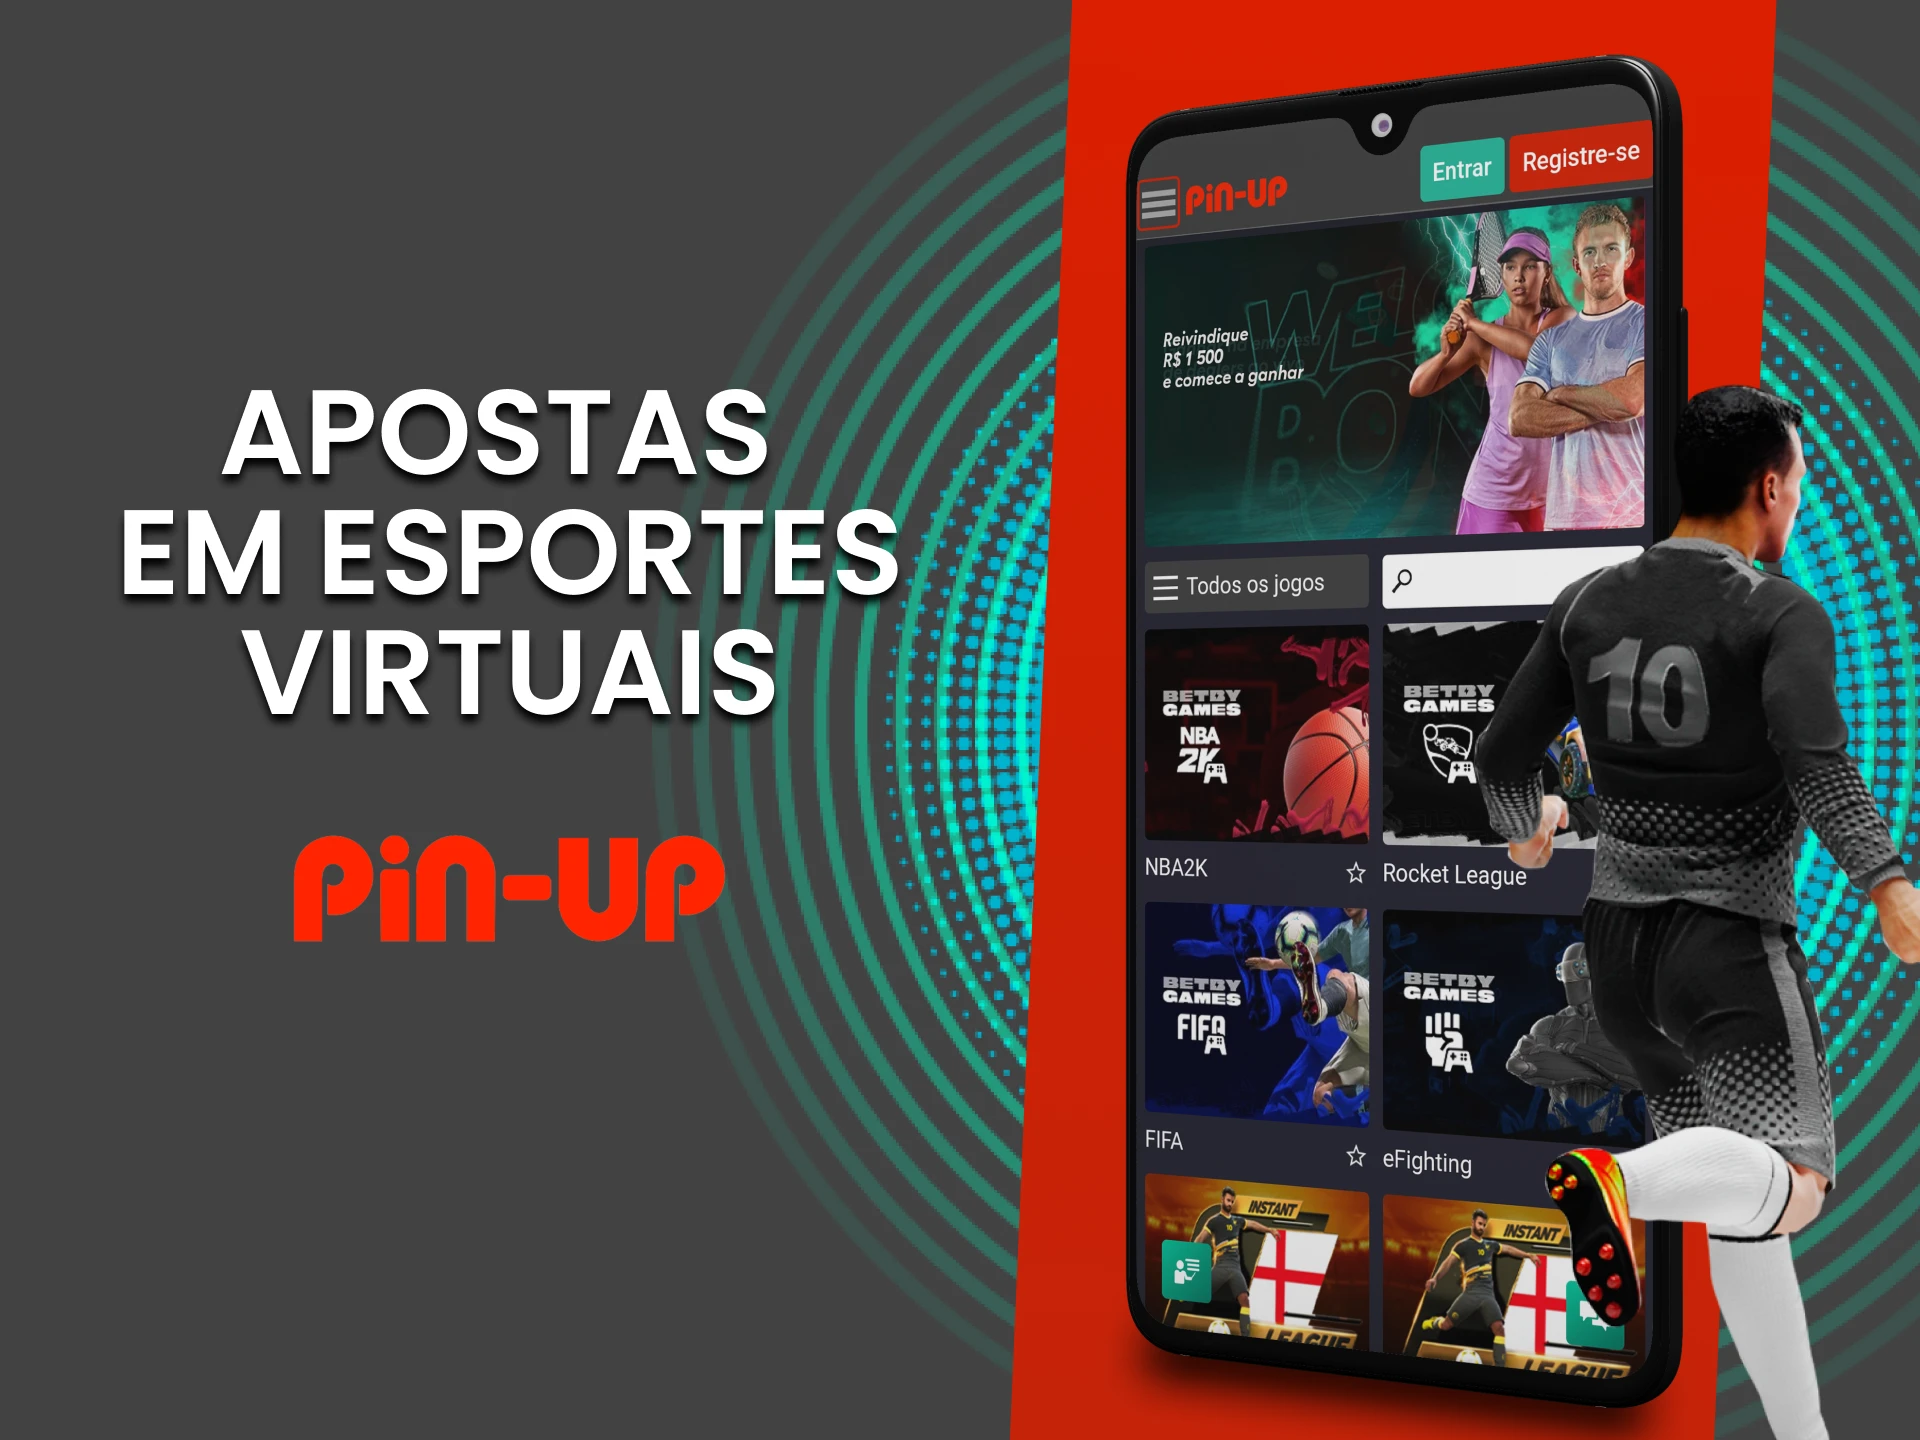 Aposte em esportes virtuais do PinUp.